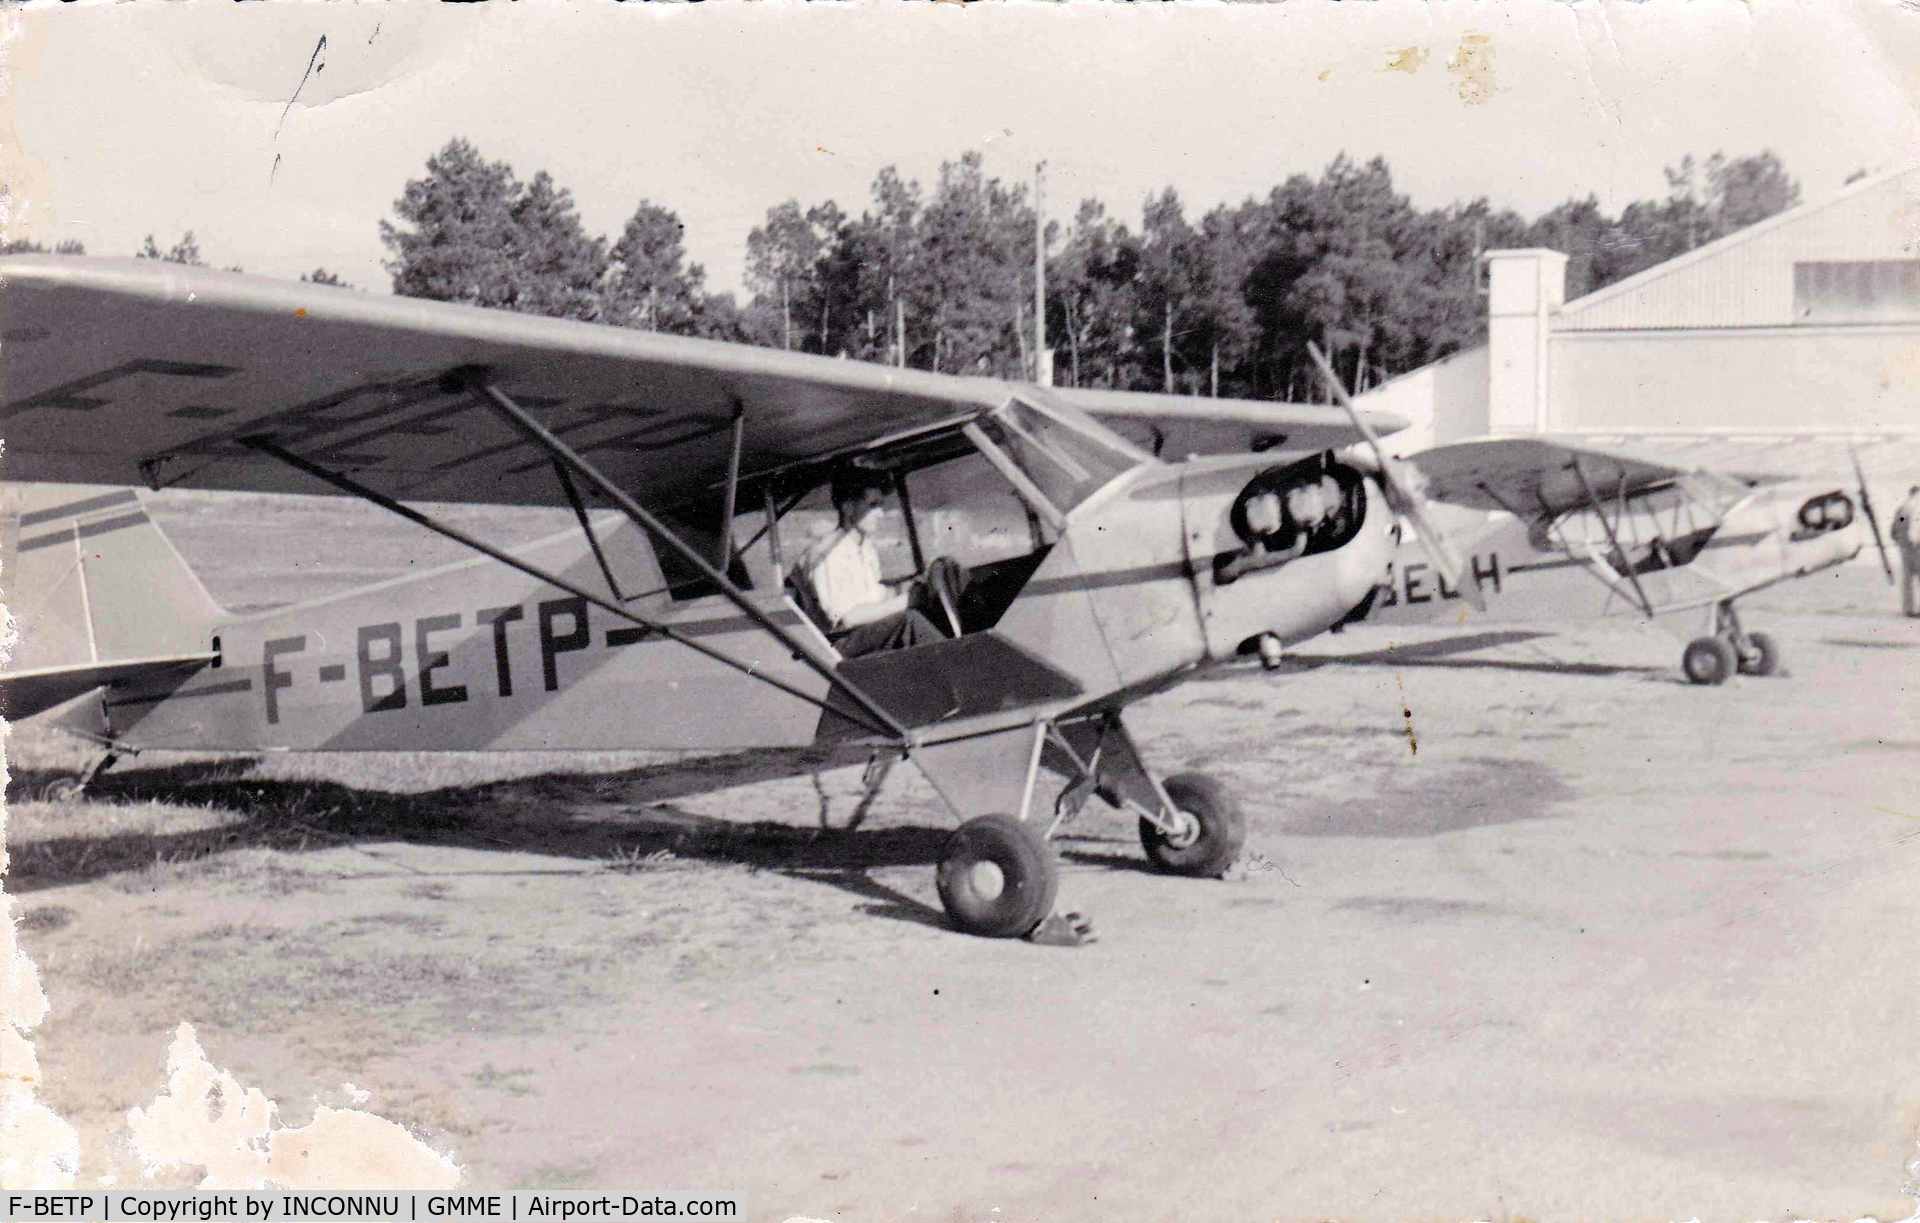 F-BETP, Piper J3C-65 Cub Cub C/N 12101, PROBABLE : RABAT 1953, PILOTE ROGER JACQUET